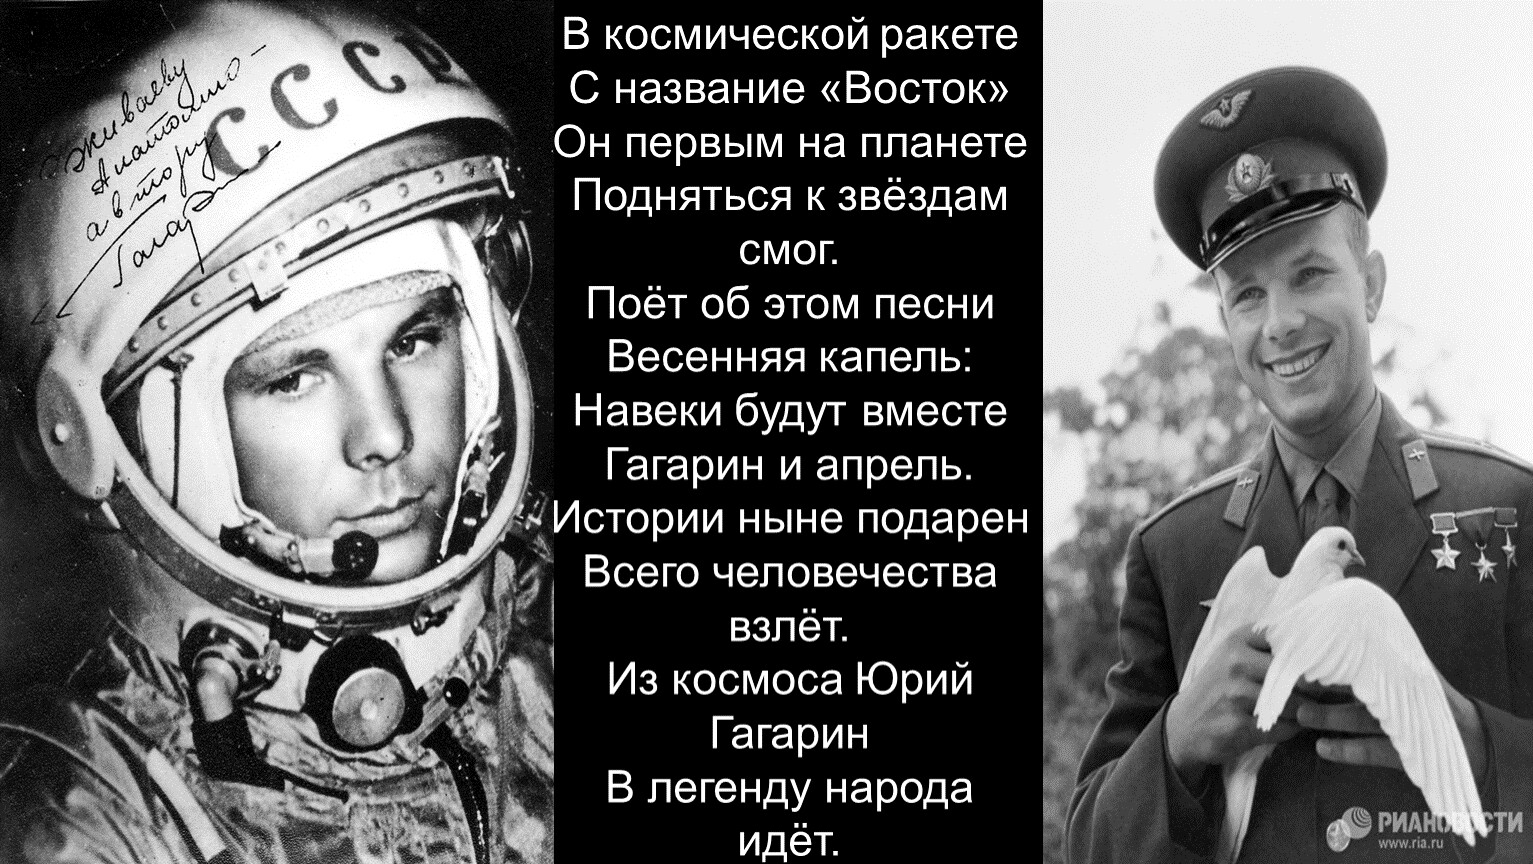 Юрий Гагарин в космической ракете